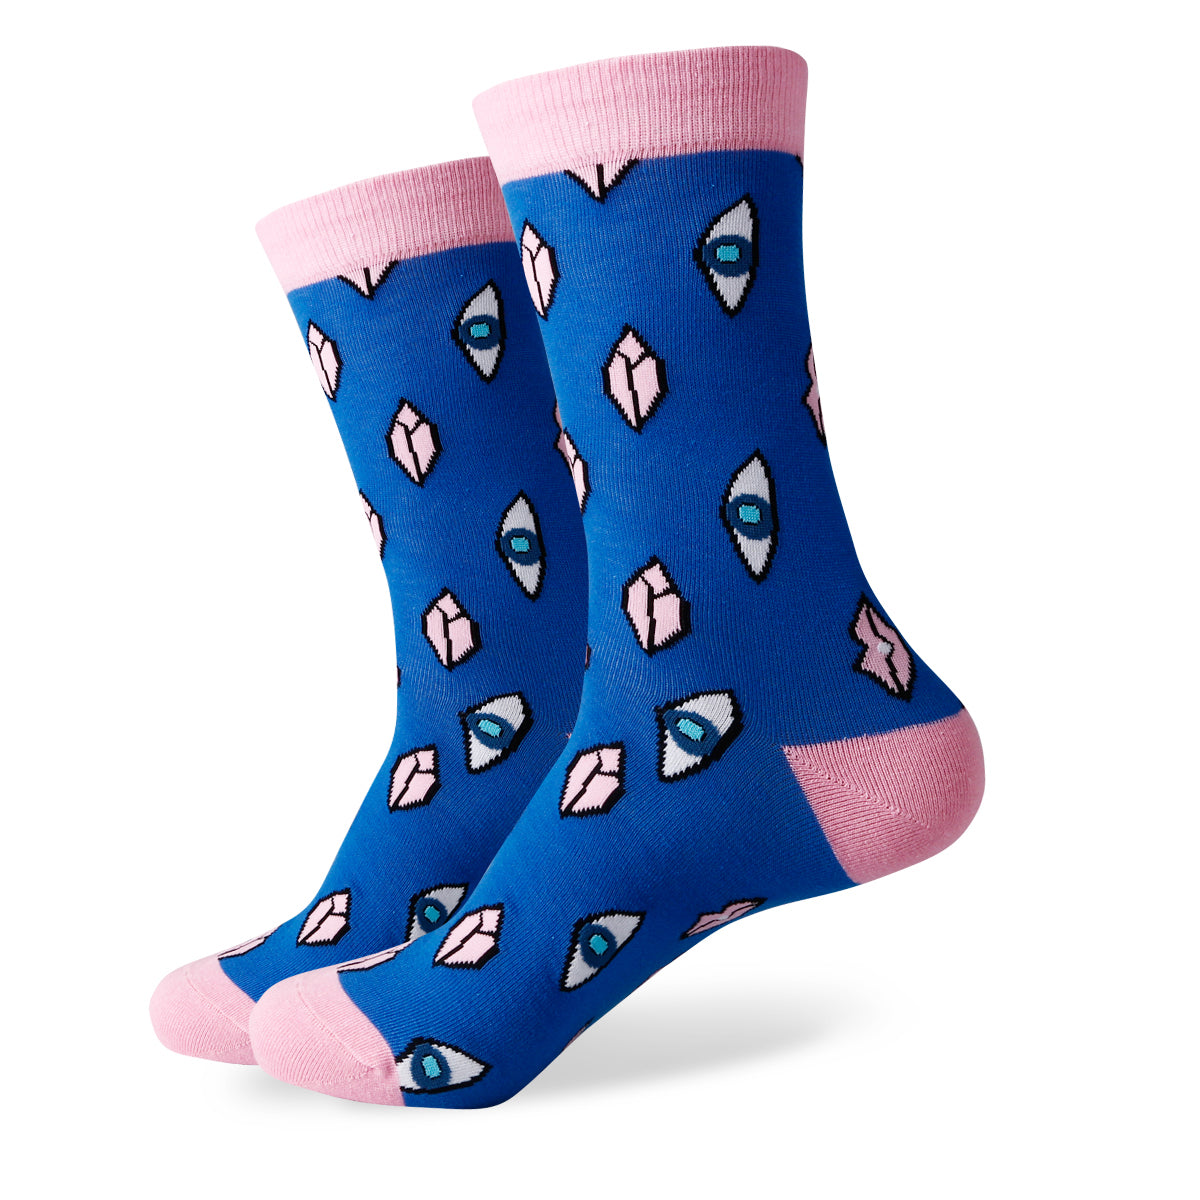 Eye Dare You Socks | Colorful designer socks